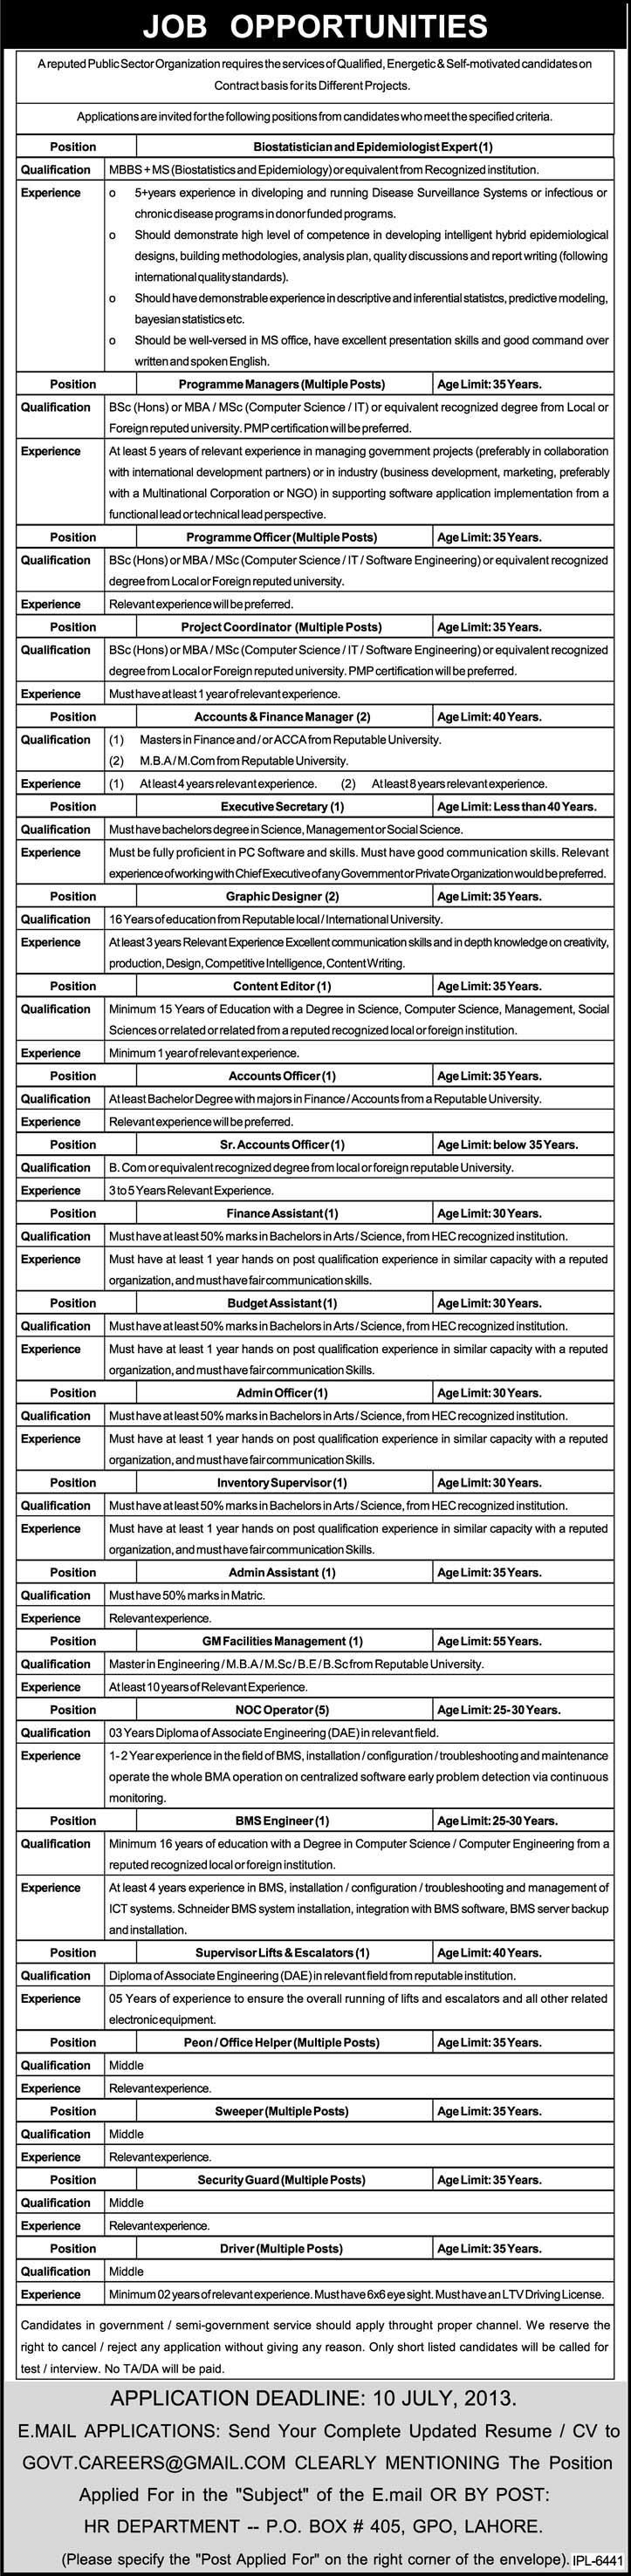 PO Box 405 GPO Lahore Jobs 2013-June-27 in a Public Sector Organization